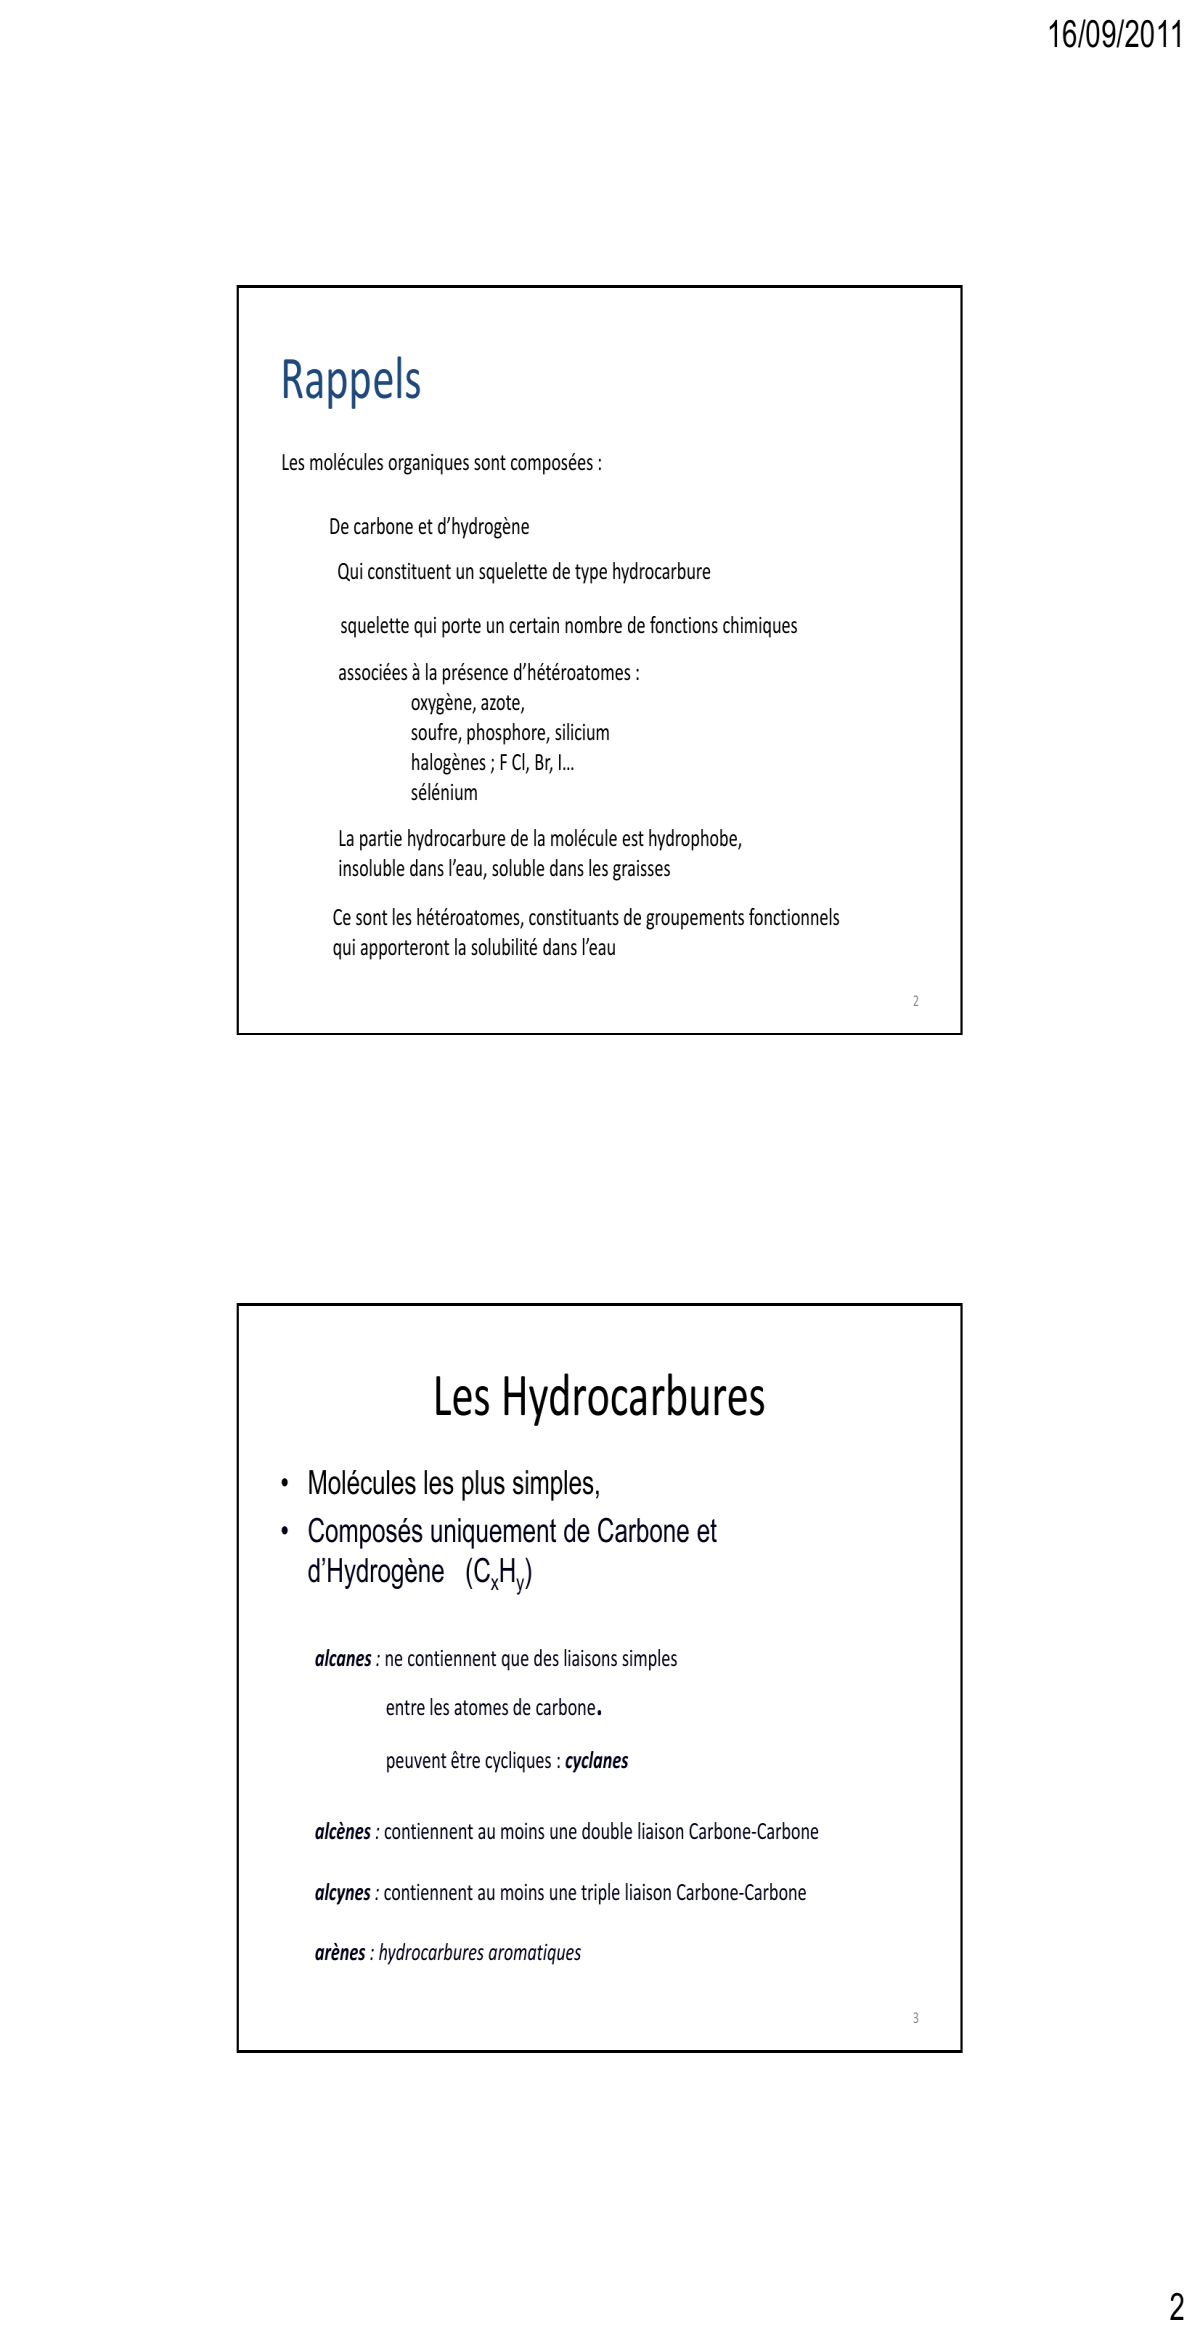 Prévisualisation du document 16/09/2011

Jean-Claude Gesquiere
Laboratoire de Chimie Organique
Faculté de Pharmacie
Inserm U761
Biostructures et Découverte